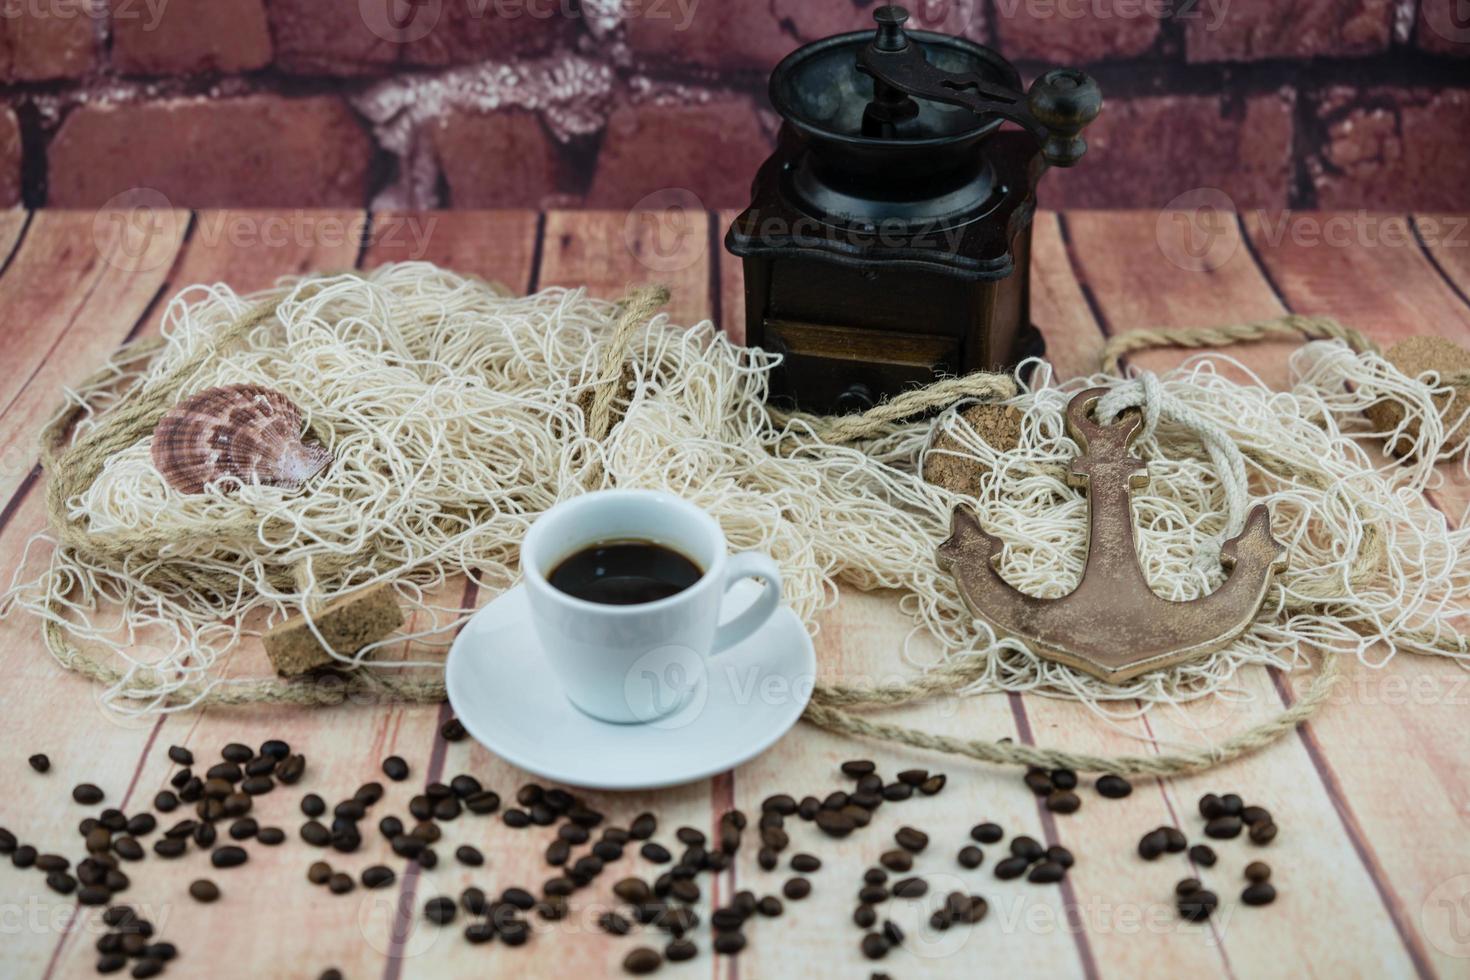 gebrande koffiebonen en een vitage koffiemolen foto